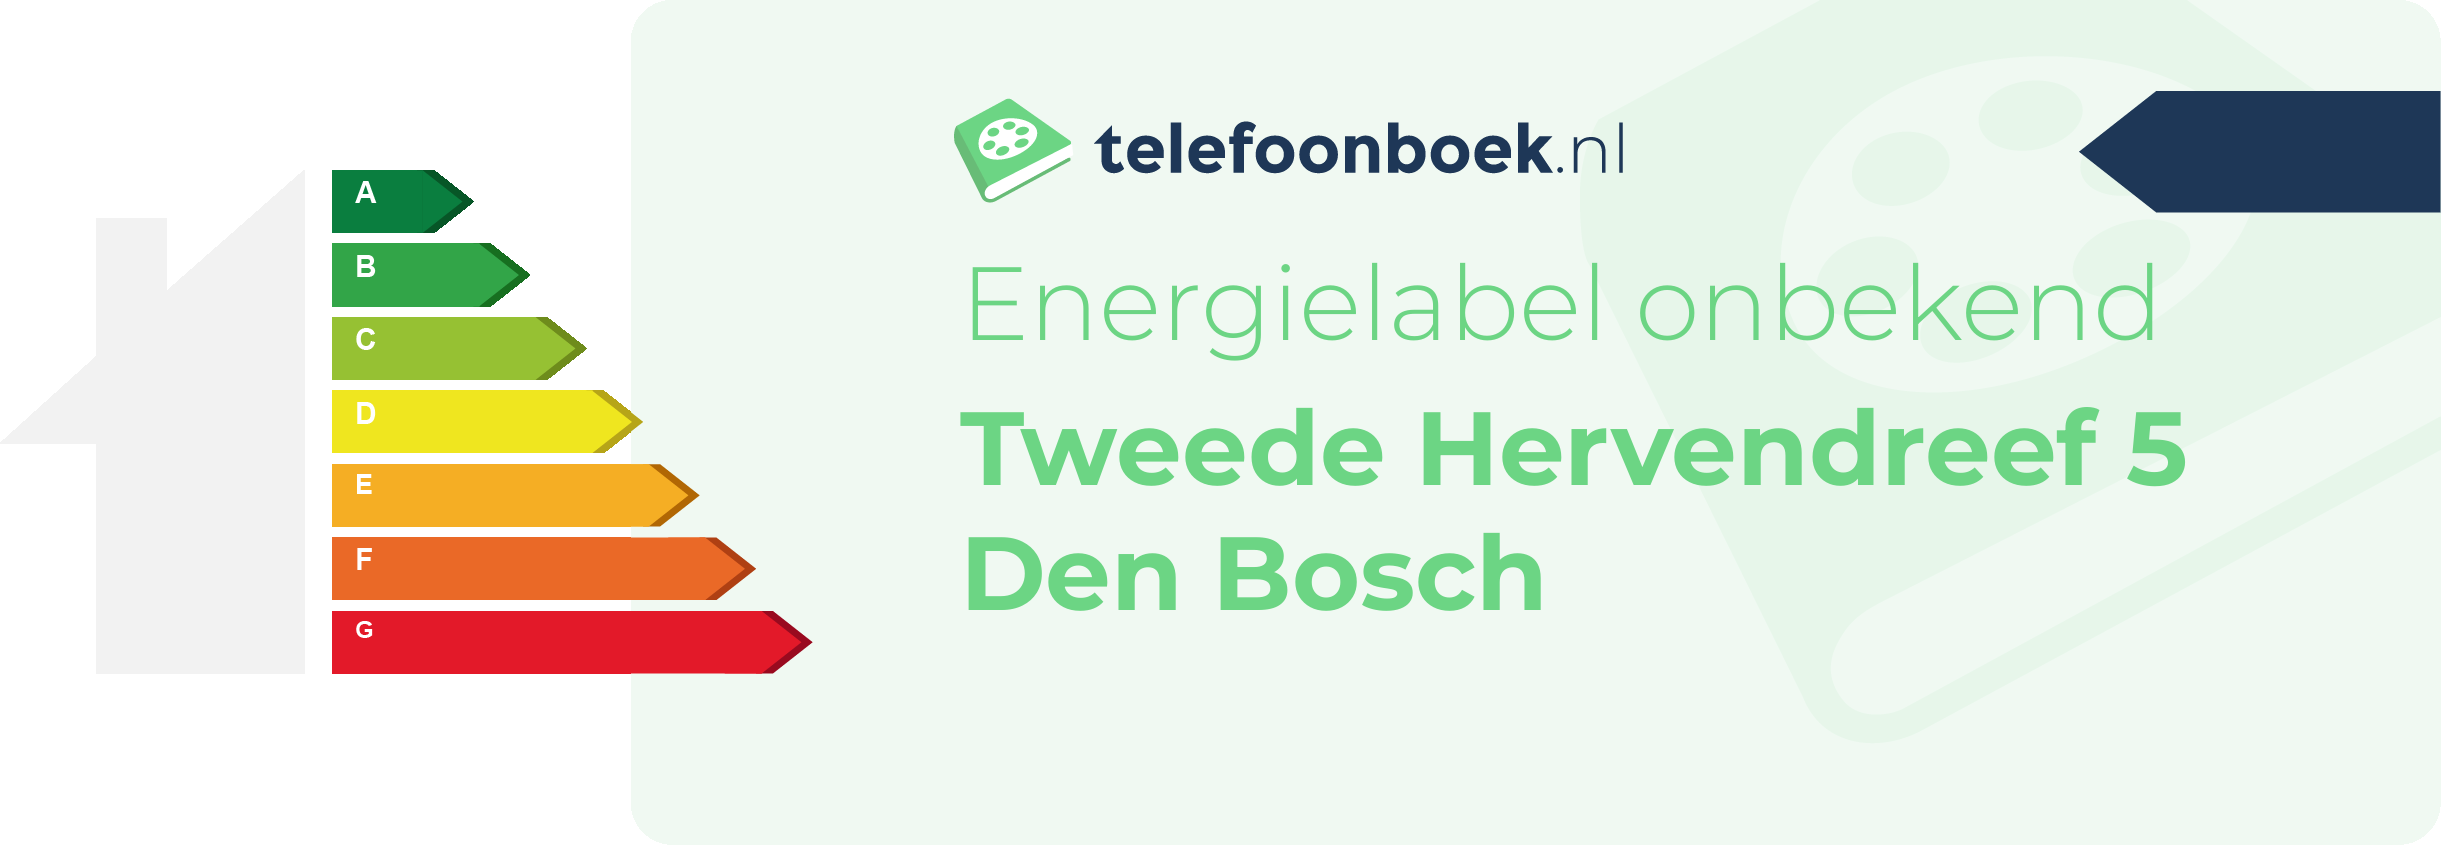 Energielabel Tweede Hervendreef 5 Den Bosch